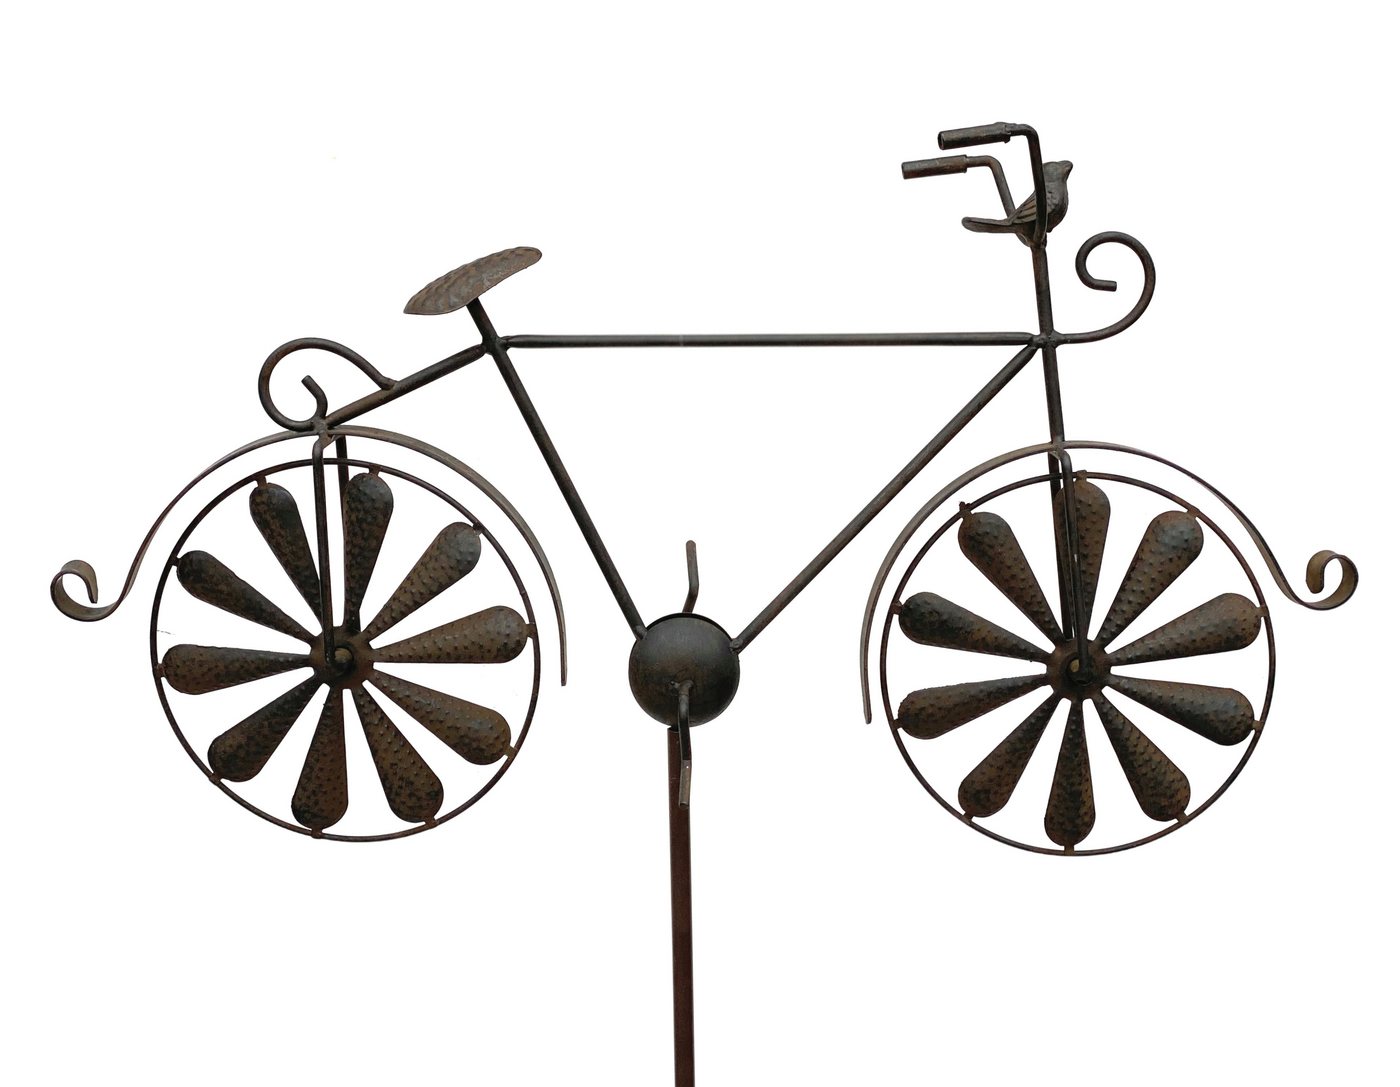 DanDiBo Gartenstecker Gartenstecker Metall Fahrrad XL 135 cm Rad Rost Braun 96004 Windspiel Windrad Wetterfest Gartendeko Garten Gartenstab Bodenstecker von DanDiBo